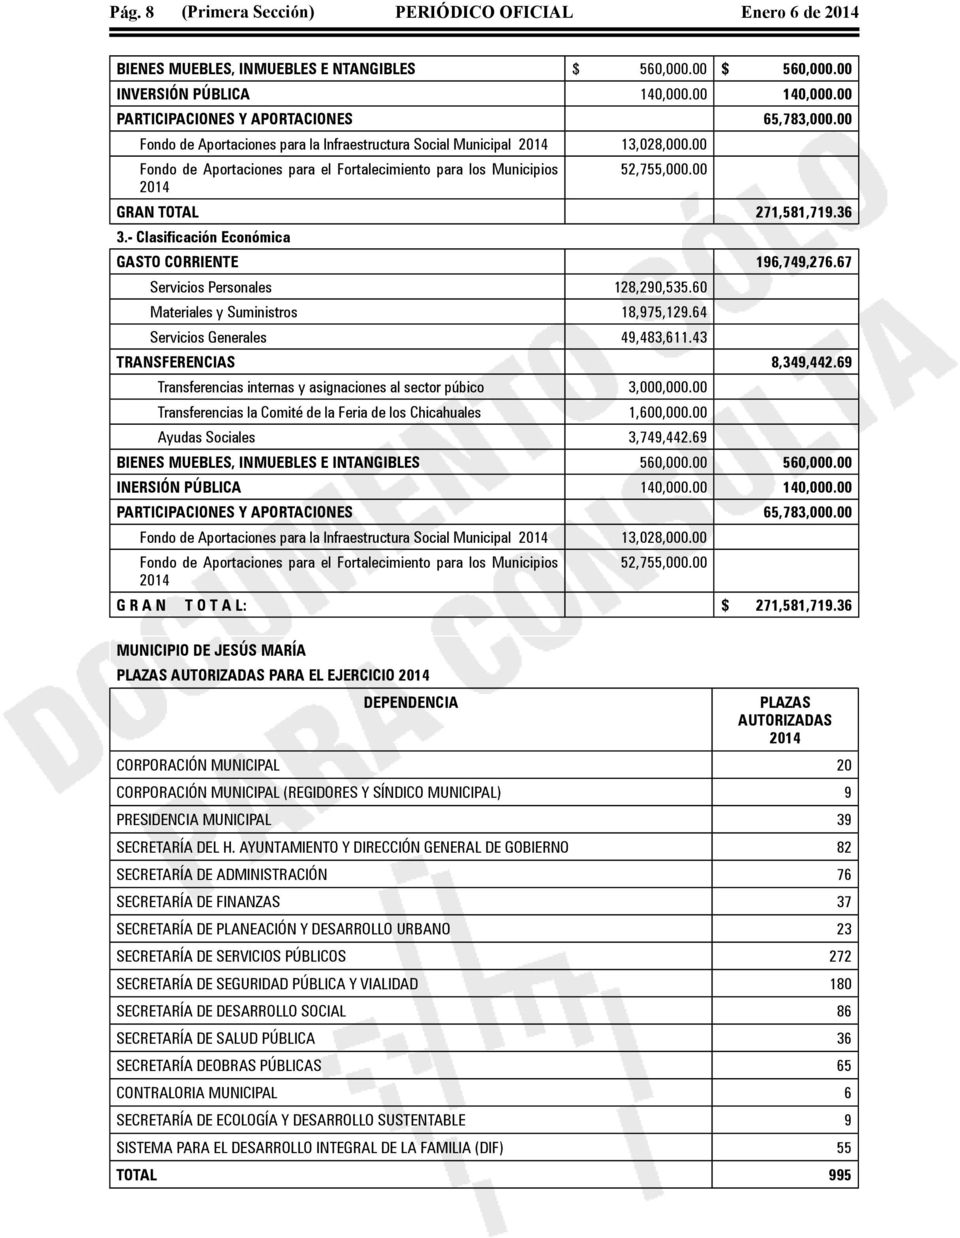 00 Fondo de Aportaciones para el Fortalecimiento para los Municipios 52,755,000.00 2014 GRAN TOTAL 271,581,719.36 3.- Clasificación Económica GASTO CORRIENTE 196,749,276.